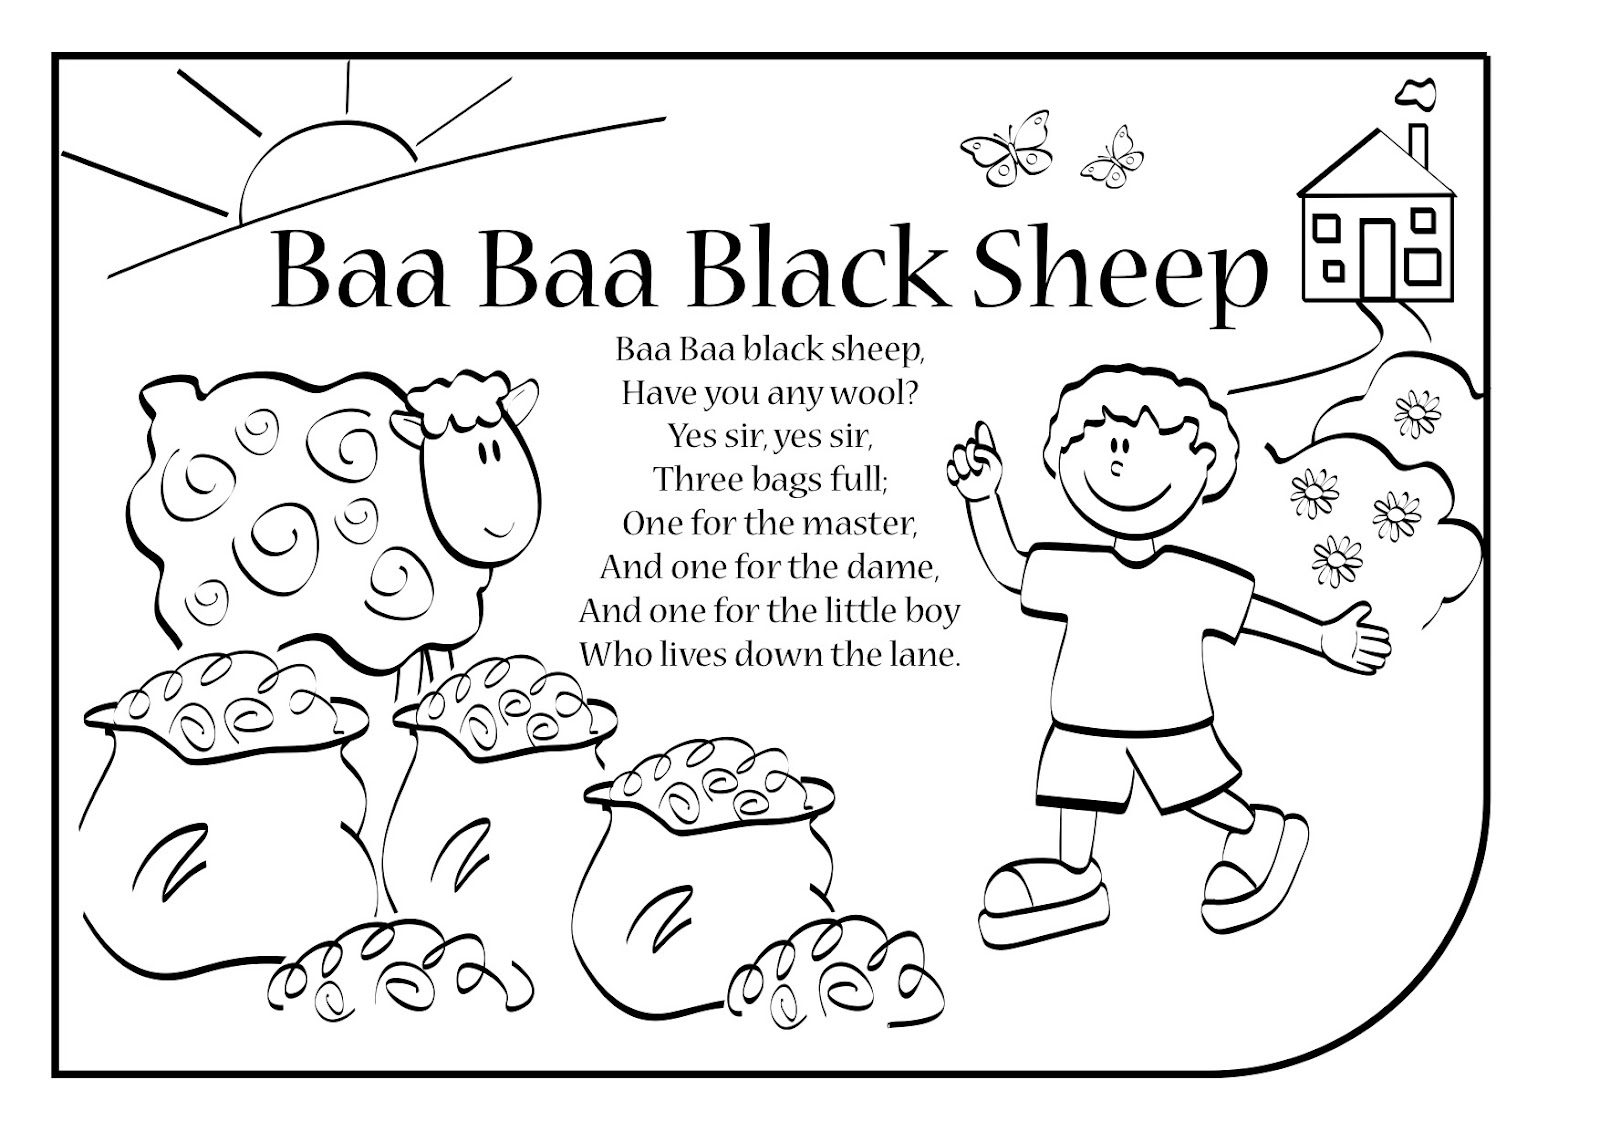 baa baa black sheep lyrics